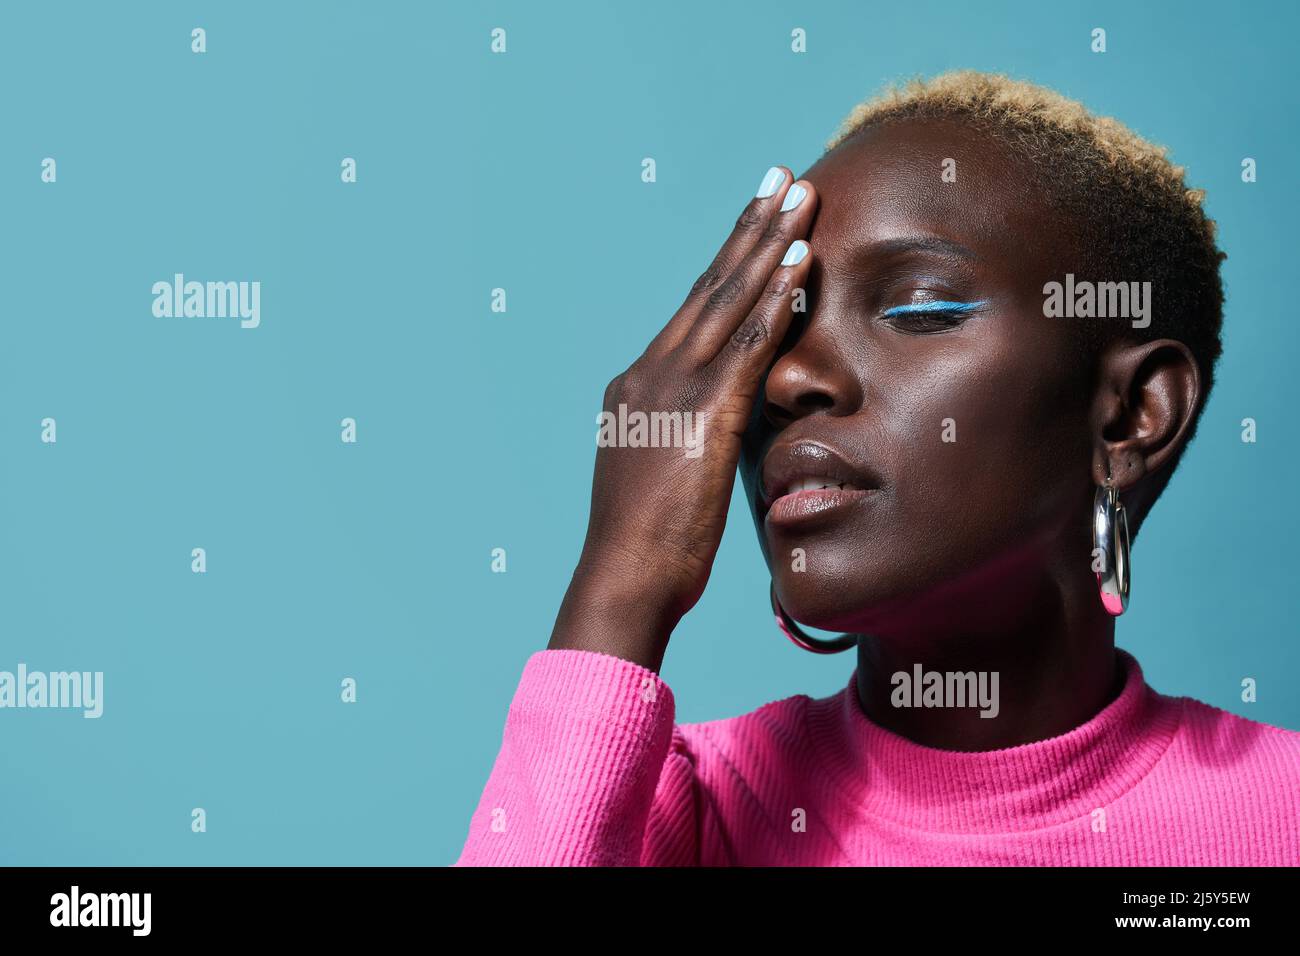 Friedliche afrikanische Frau mit Make-up und kurzgefärbten Haaren, die das Auge mit der Hand bedeckt, während sie im Studio auf blauem Hintergrund steht Stockfoto